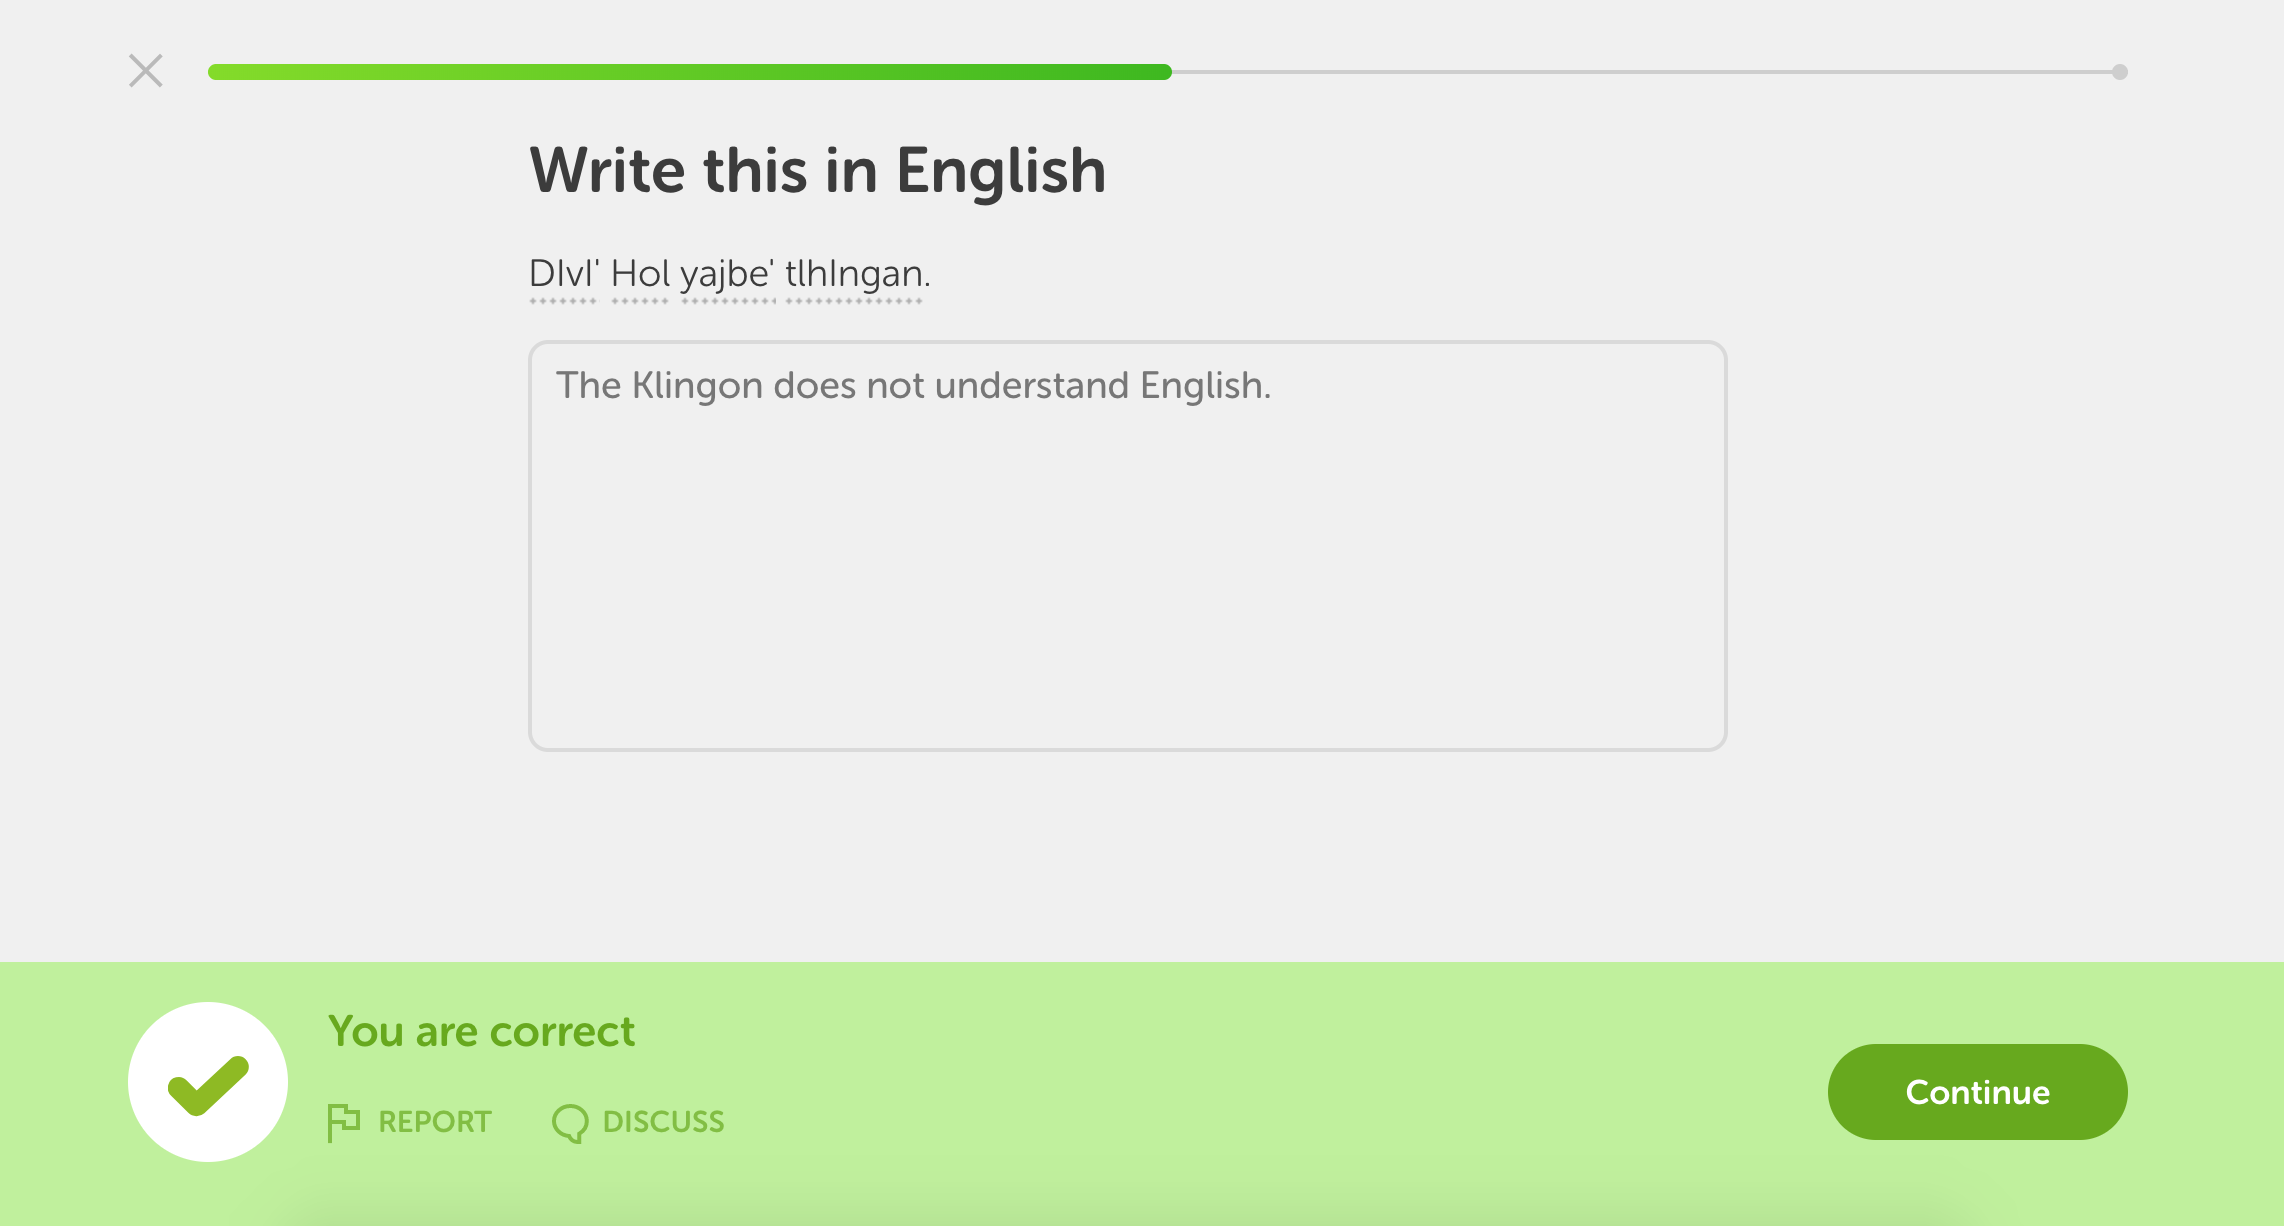 Duolingo's Klingon course has finally arrived | DeviceDaily.com